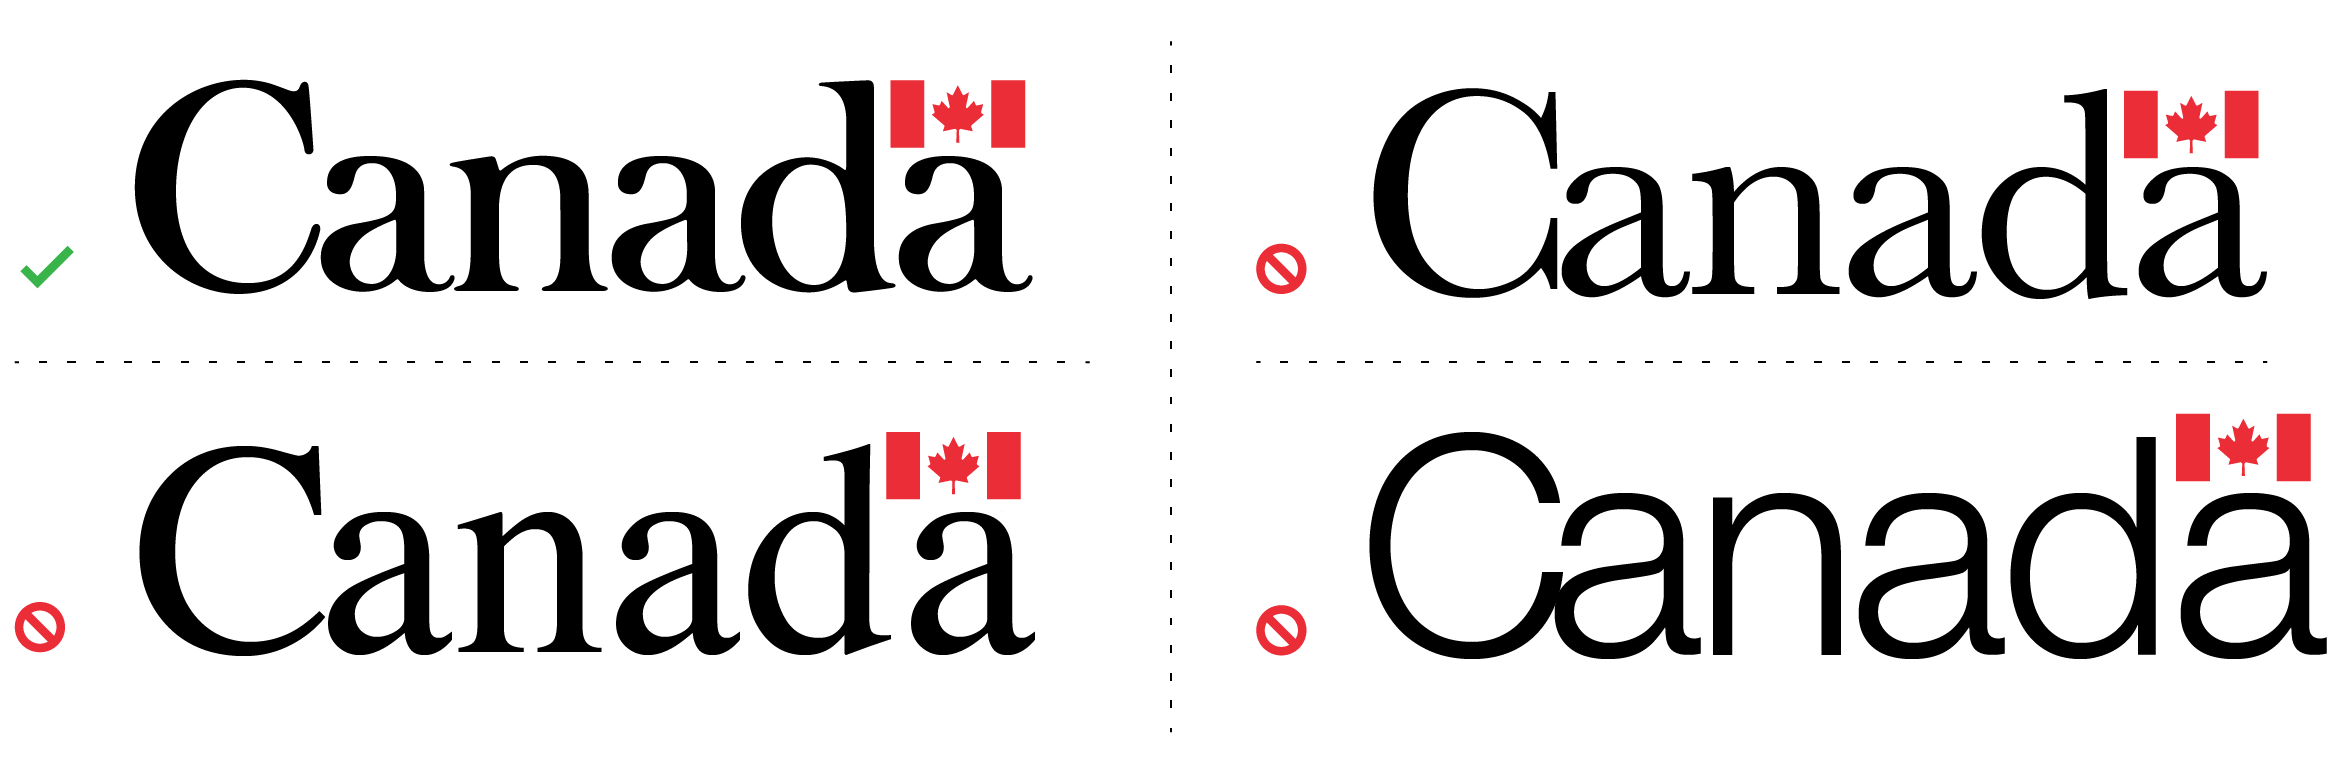 La bonne version du mot-symbole « Canada » (en haut à gauche) et 3 versions qui utilisent un mauvais style de caractères